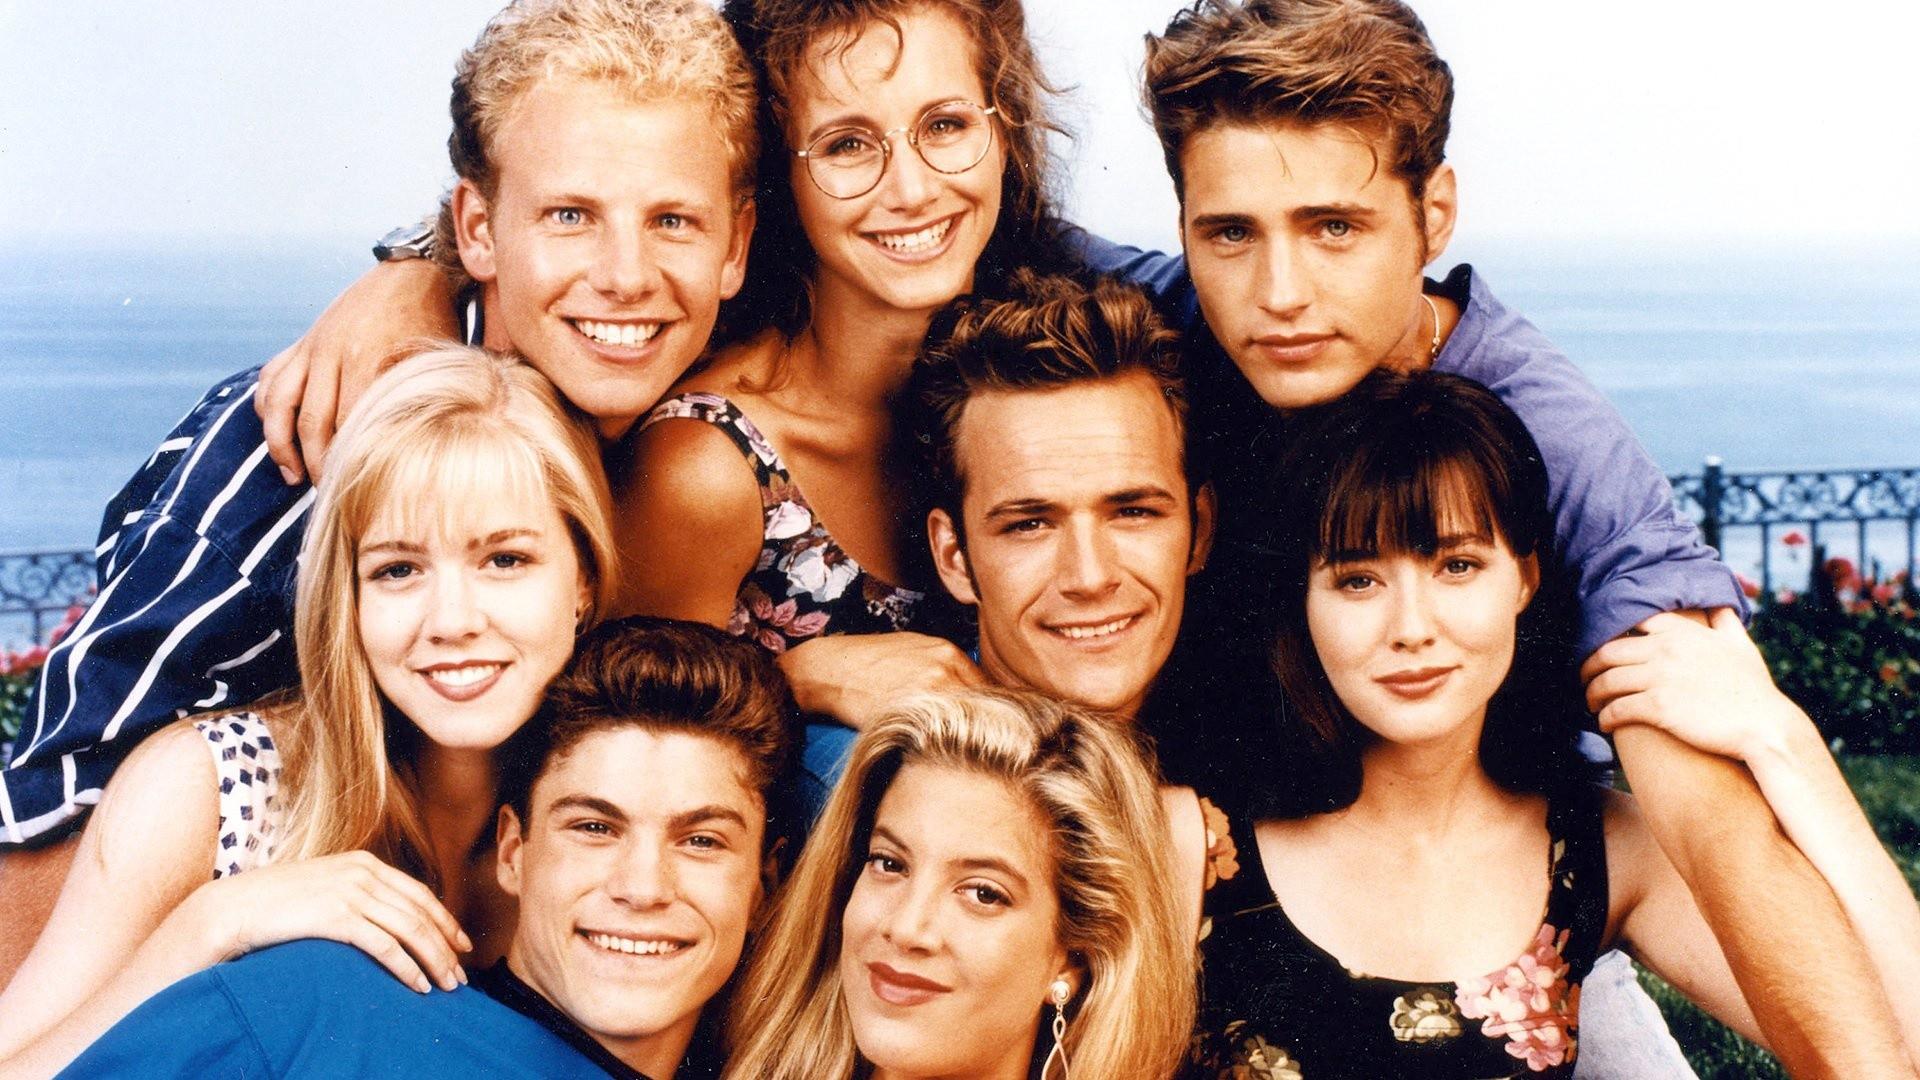 Беверли-Хиллз 90210 – 1 сезон 1 серия «Класс Беверли-Хиллз» / Beverly Hills, 90210